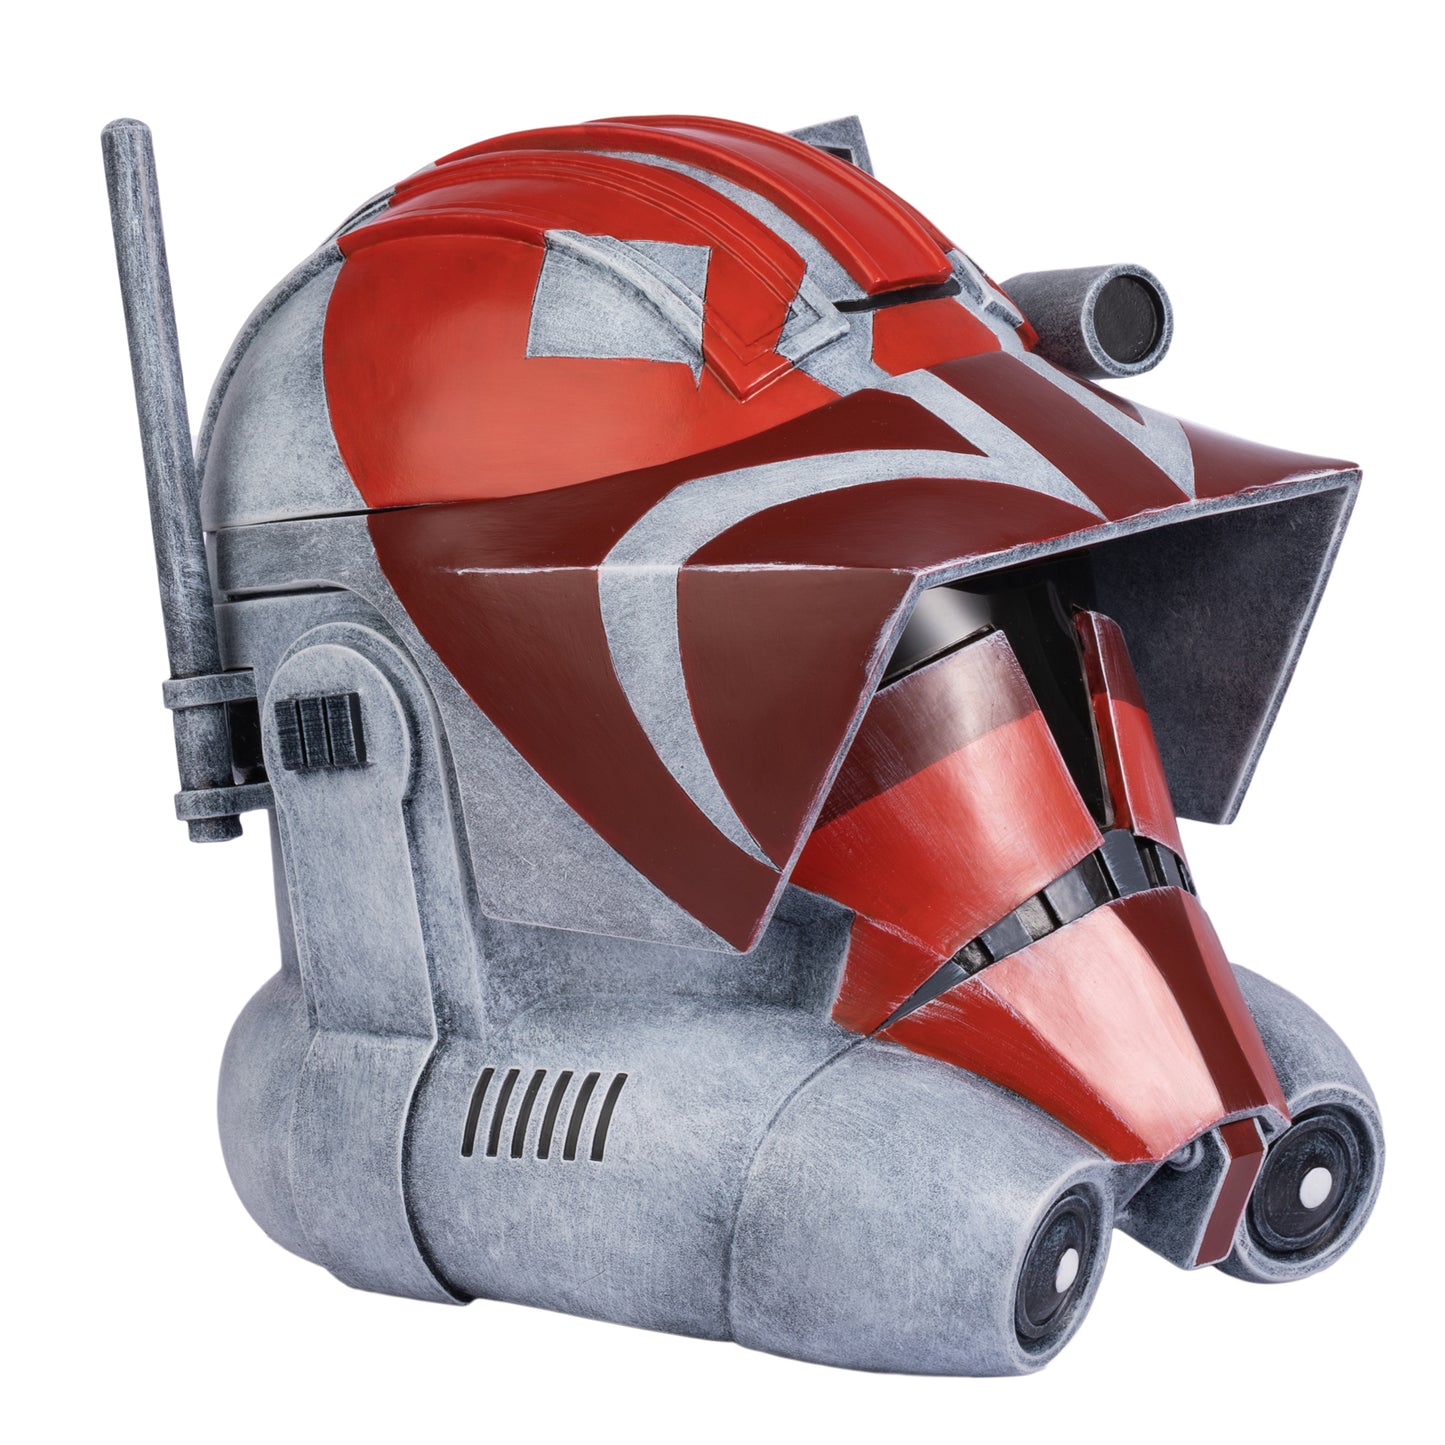 Xcoser Star Wars The Clone Wars 332nd Vaughn Clone Trooper Helm Halloween Cosplay Helm für Erwachsene